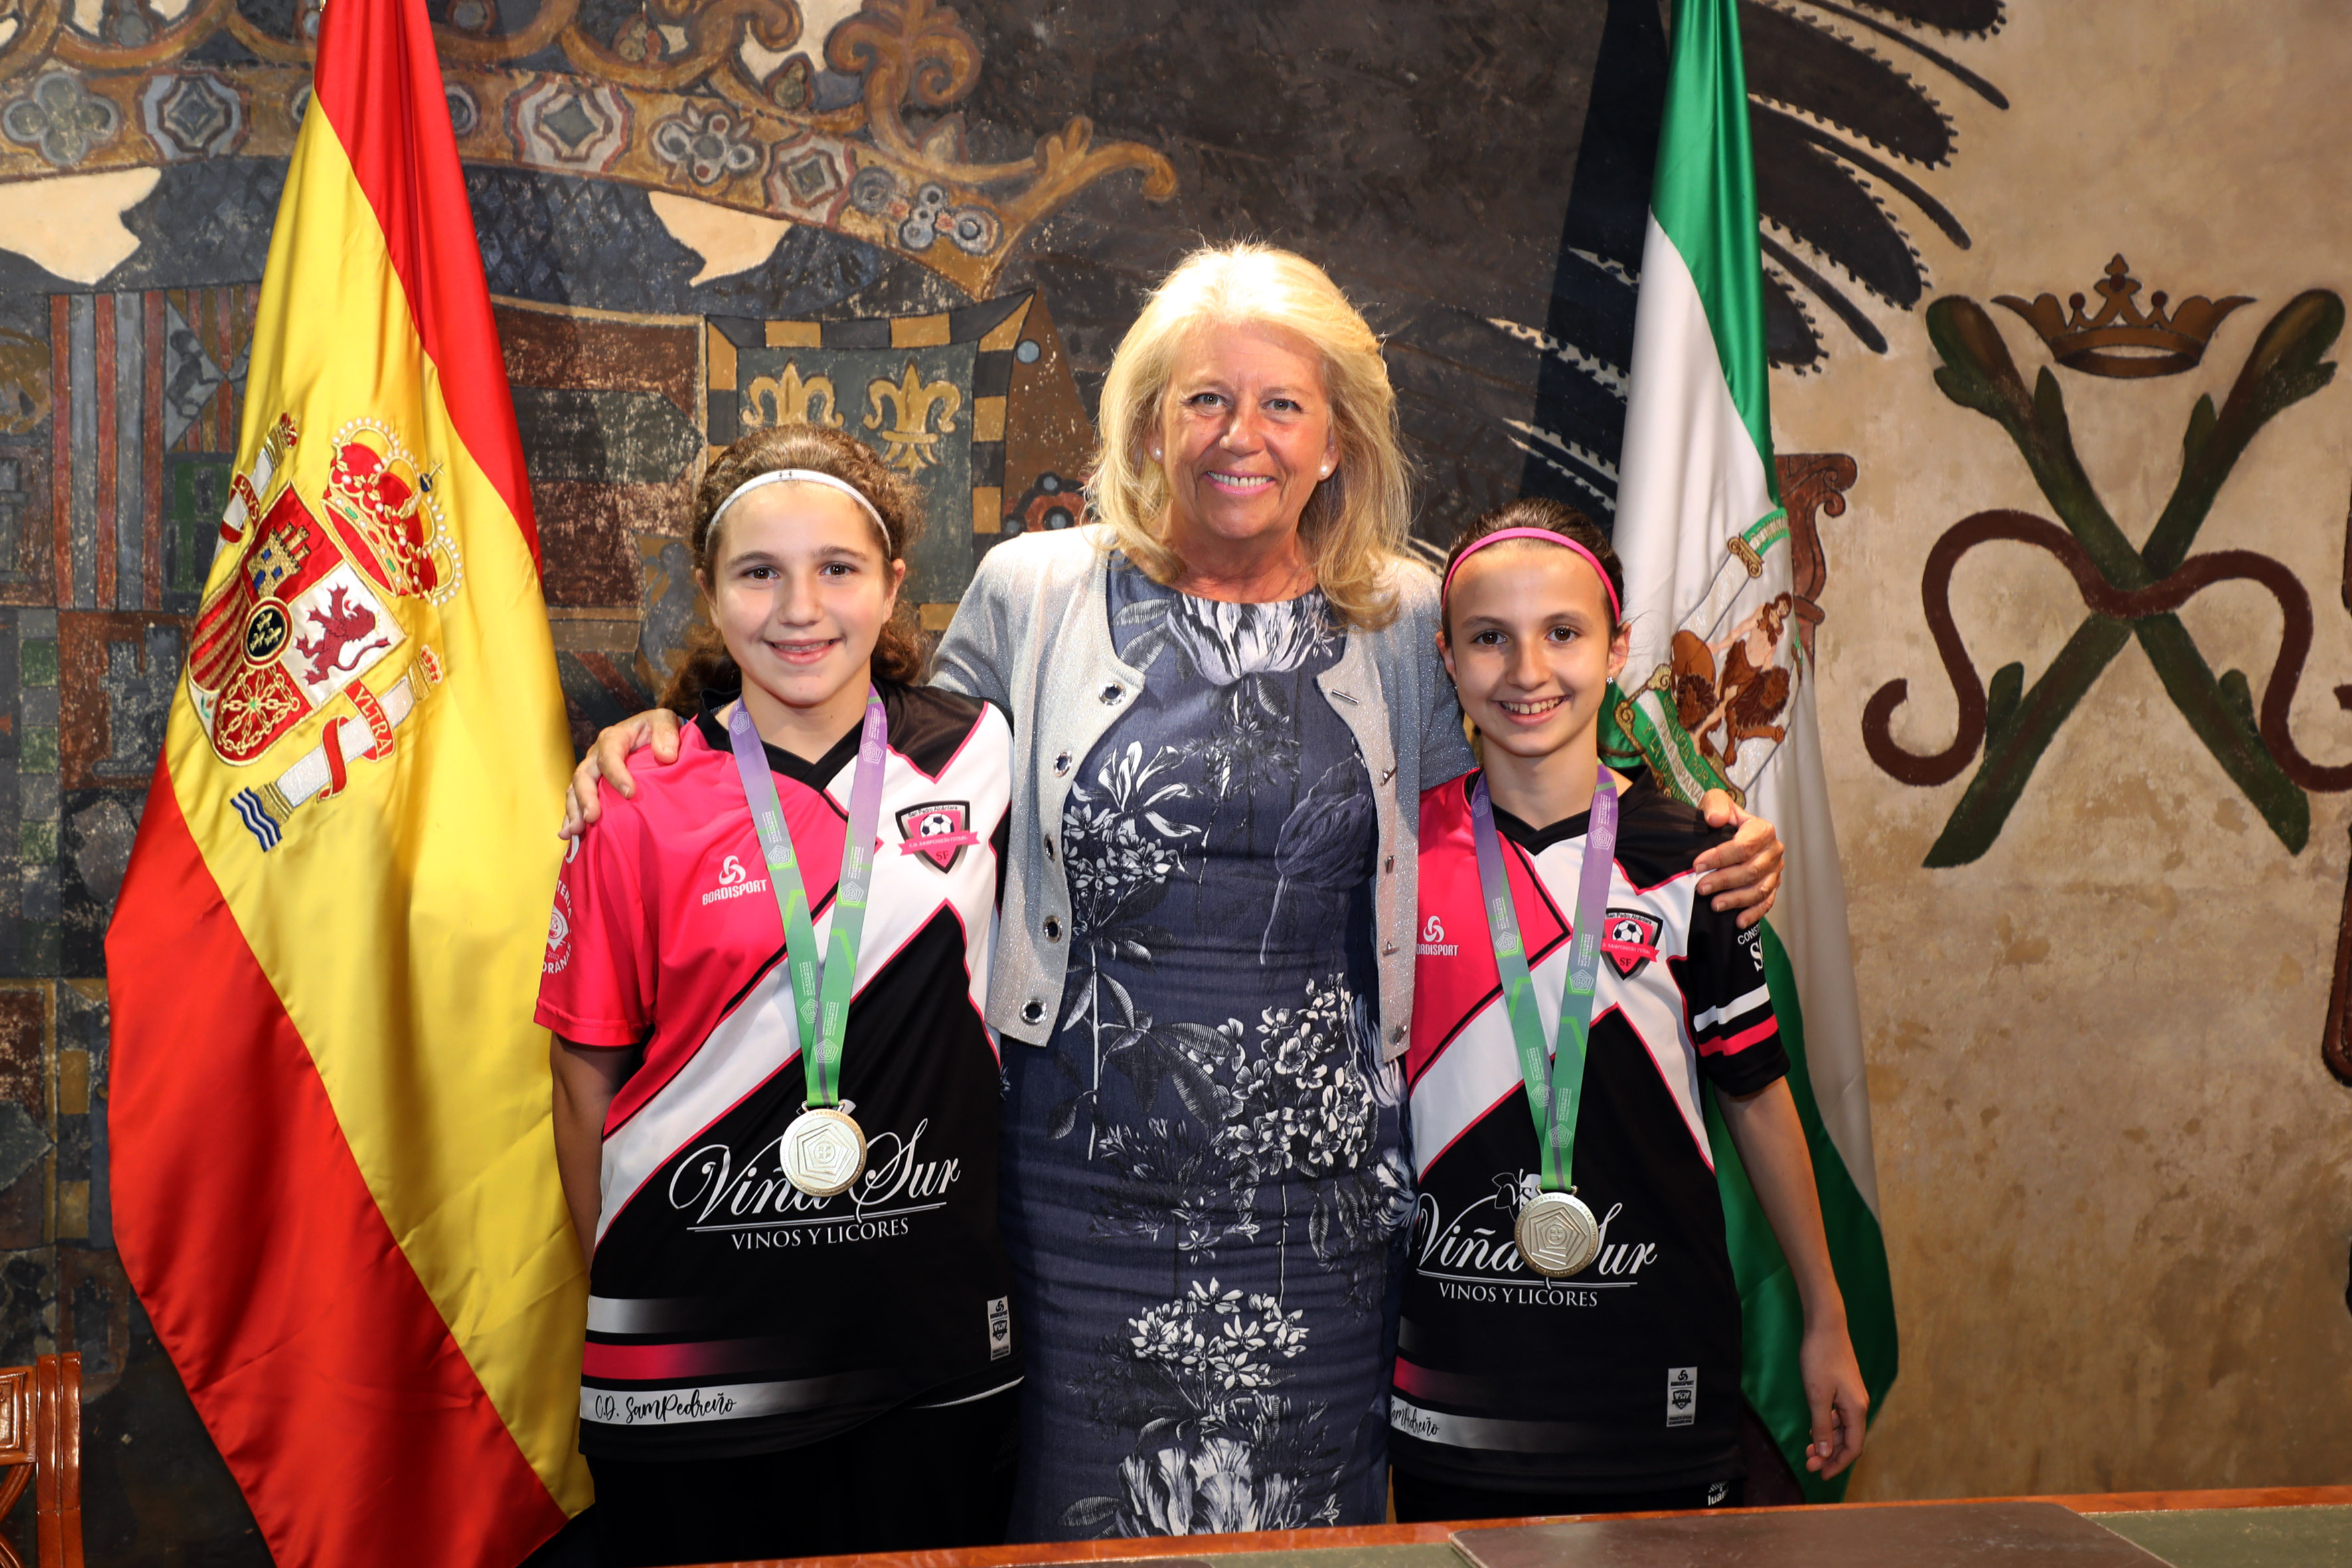 La alcaldesa felicita por sus éxitos a seis deportistas del Club Los Monteros Triatlón Marbella y a sendas jugadoras de fútbol sala del CD Sampedreño Futsal